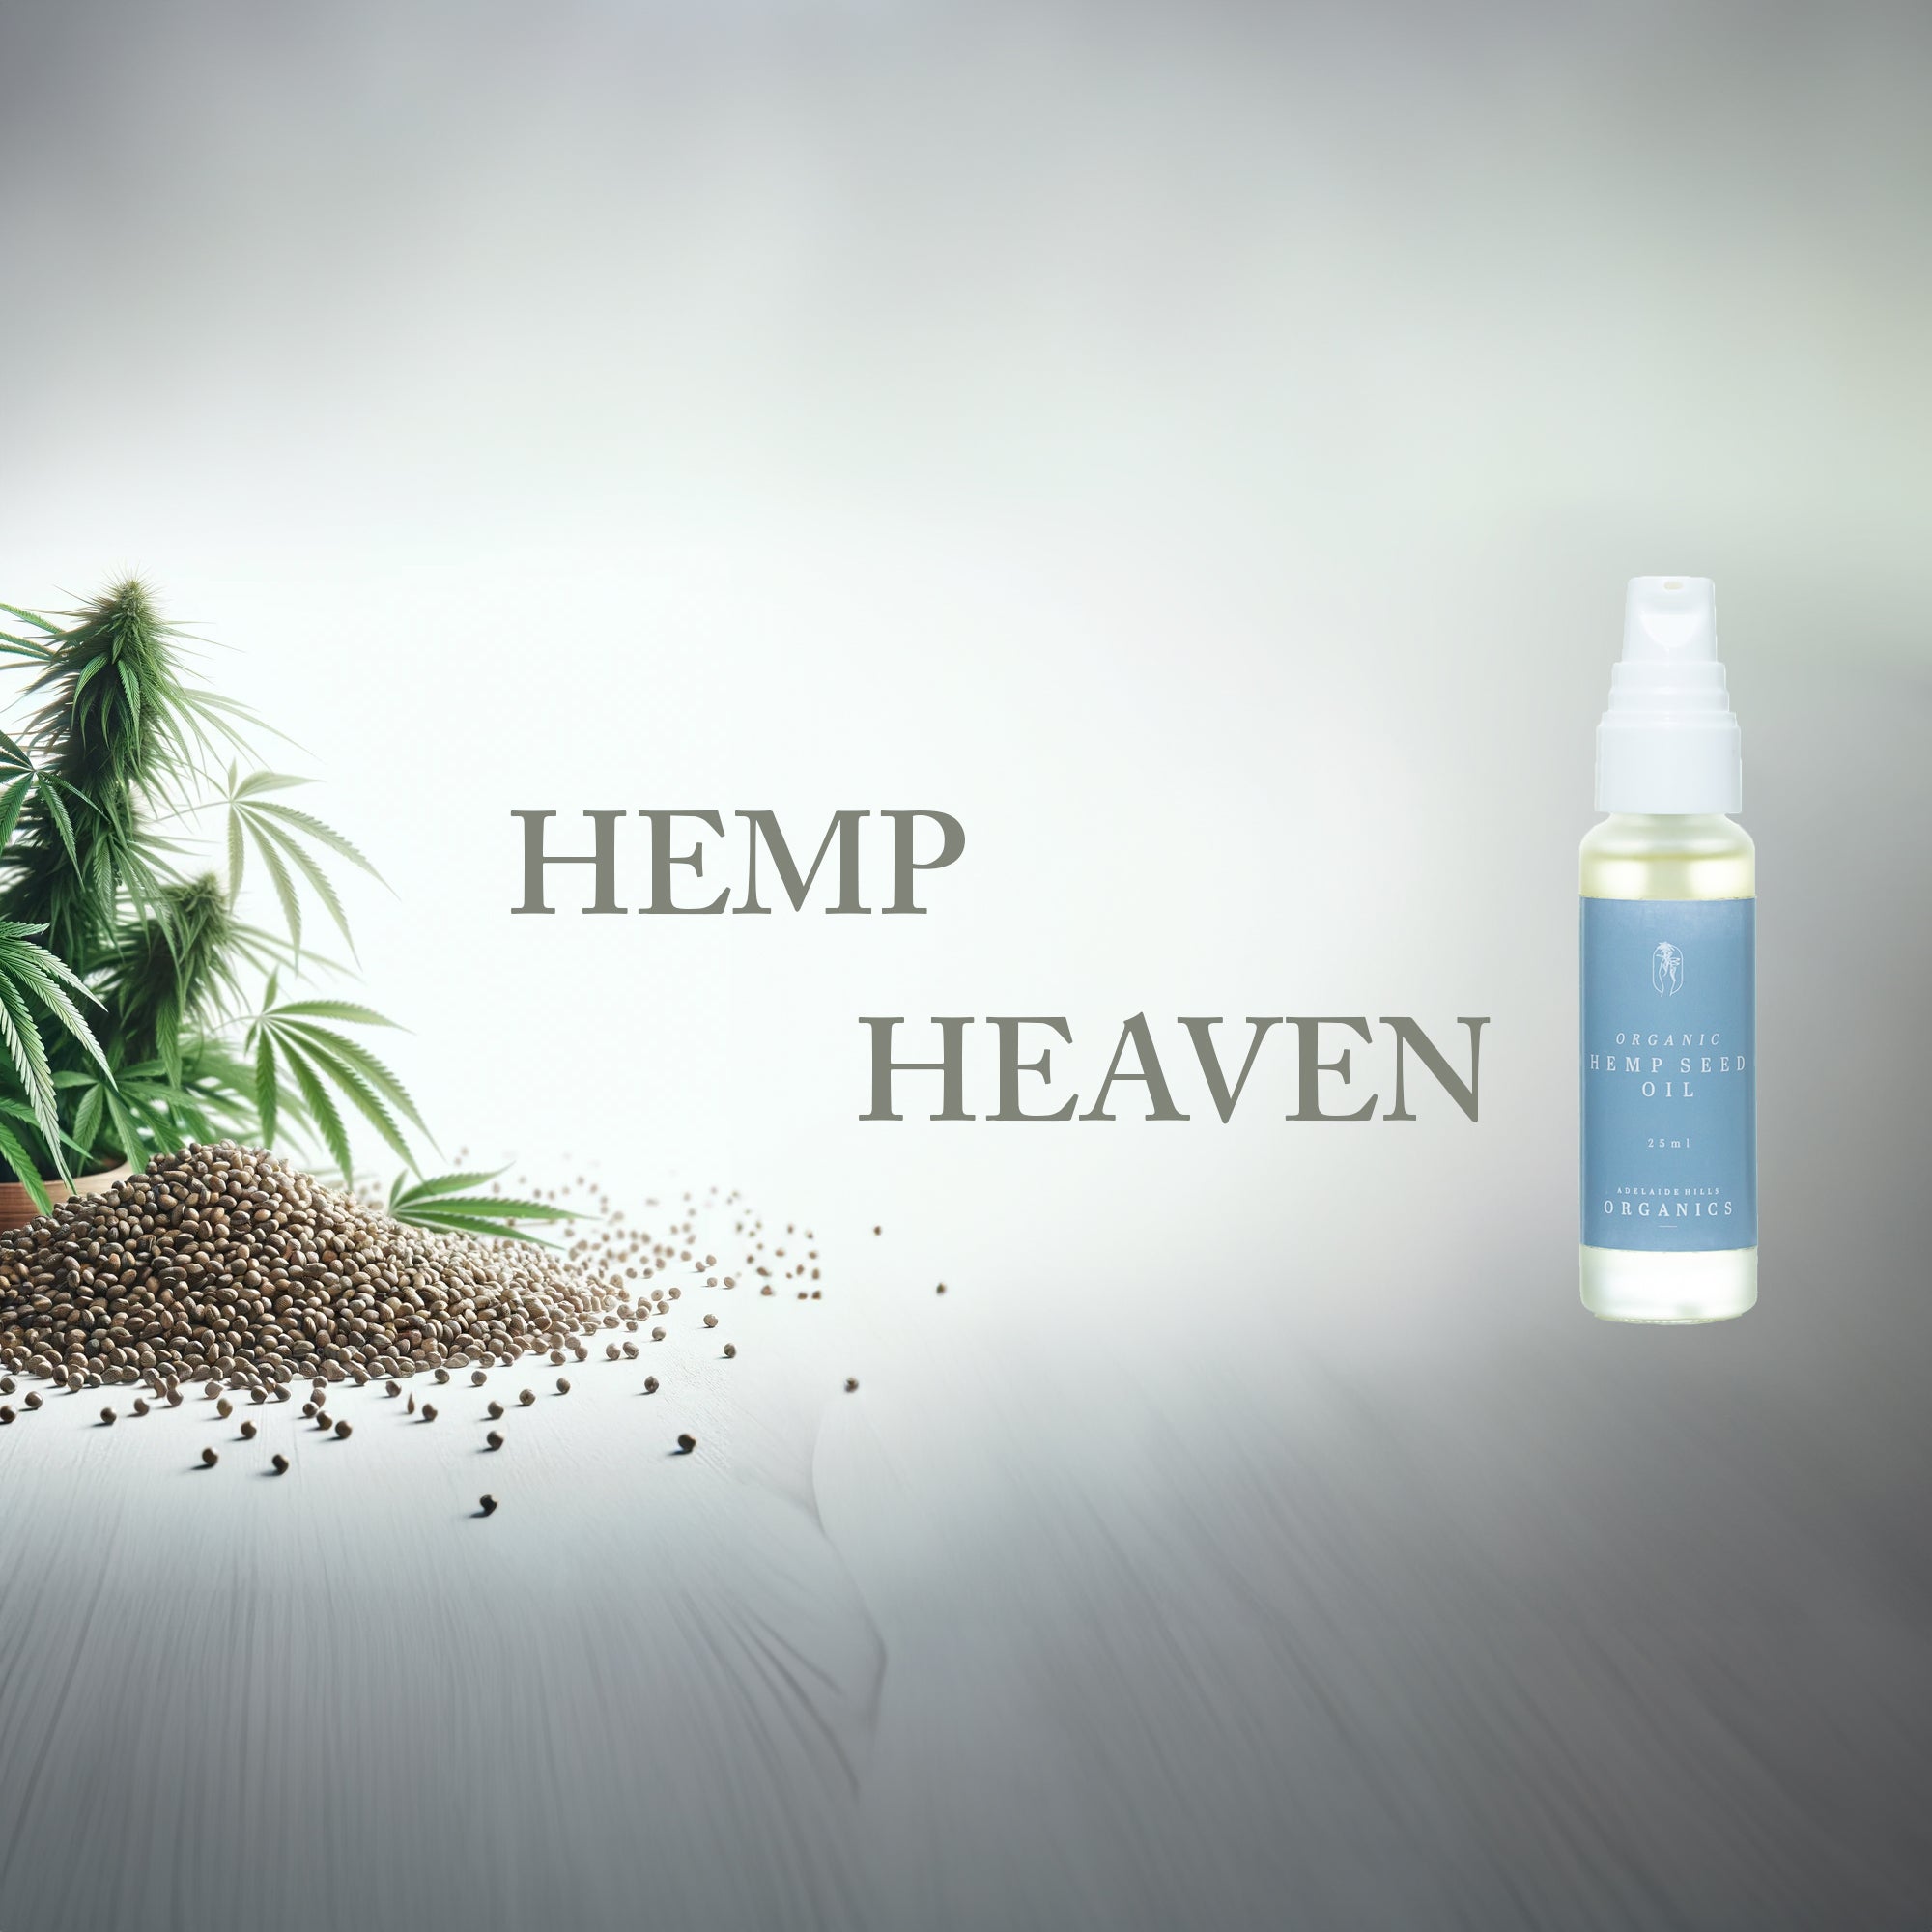 Hemp Heaven : The Organic Magic on your Beautiful Skin